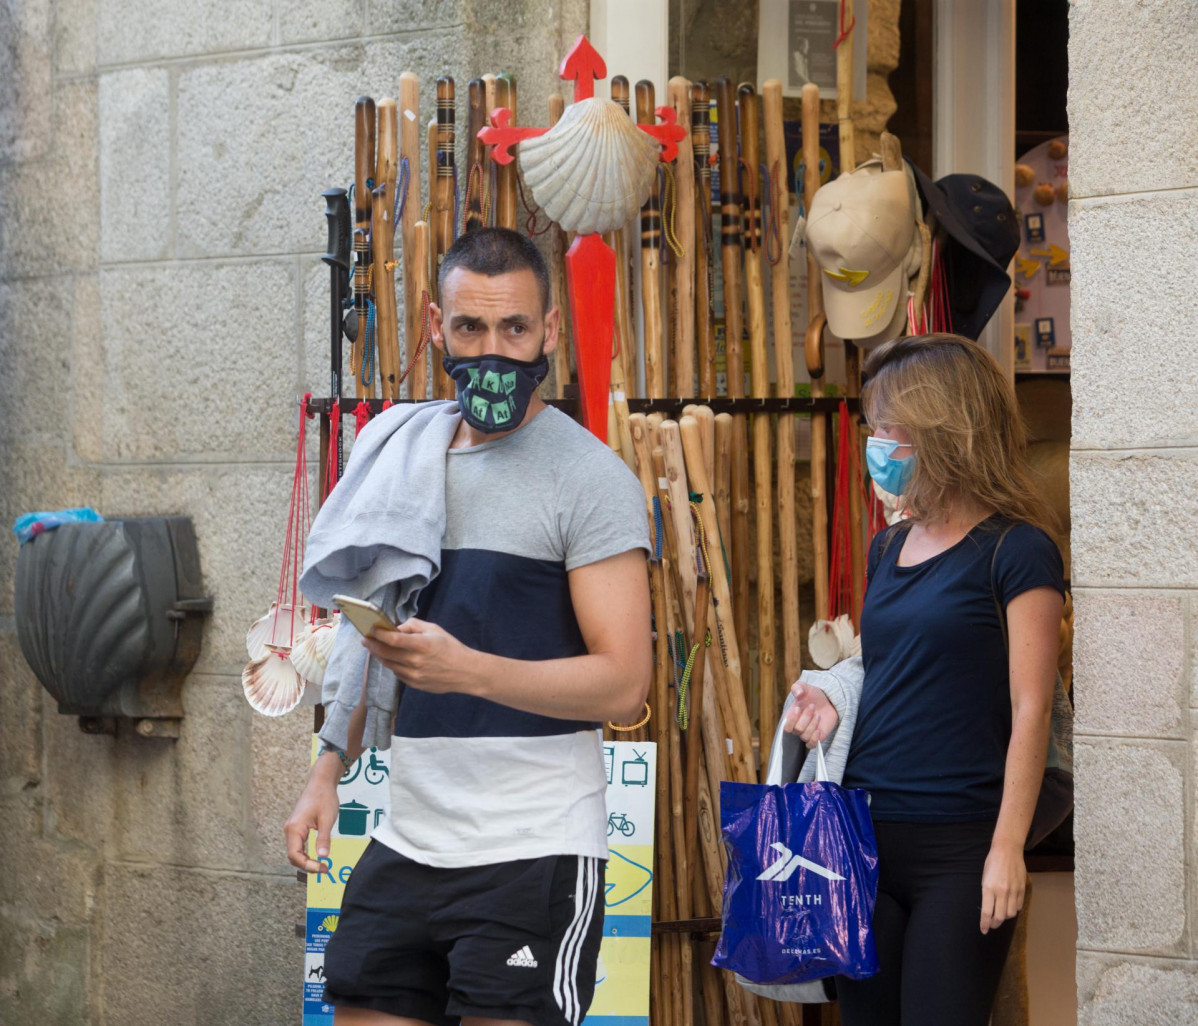 Los peregrinos alicantinos Miguel Ángel y Elena salen de un establecimiento con elementos del Camino a la venta en la localidad de Sarria, mientras los peregrinos retornan al Camino francés de la Ru